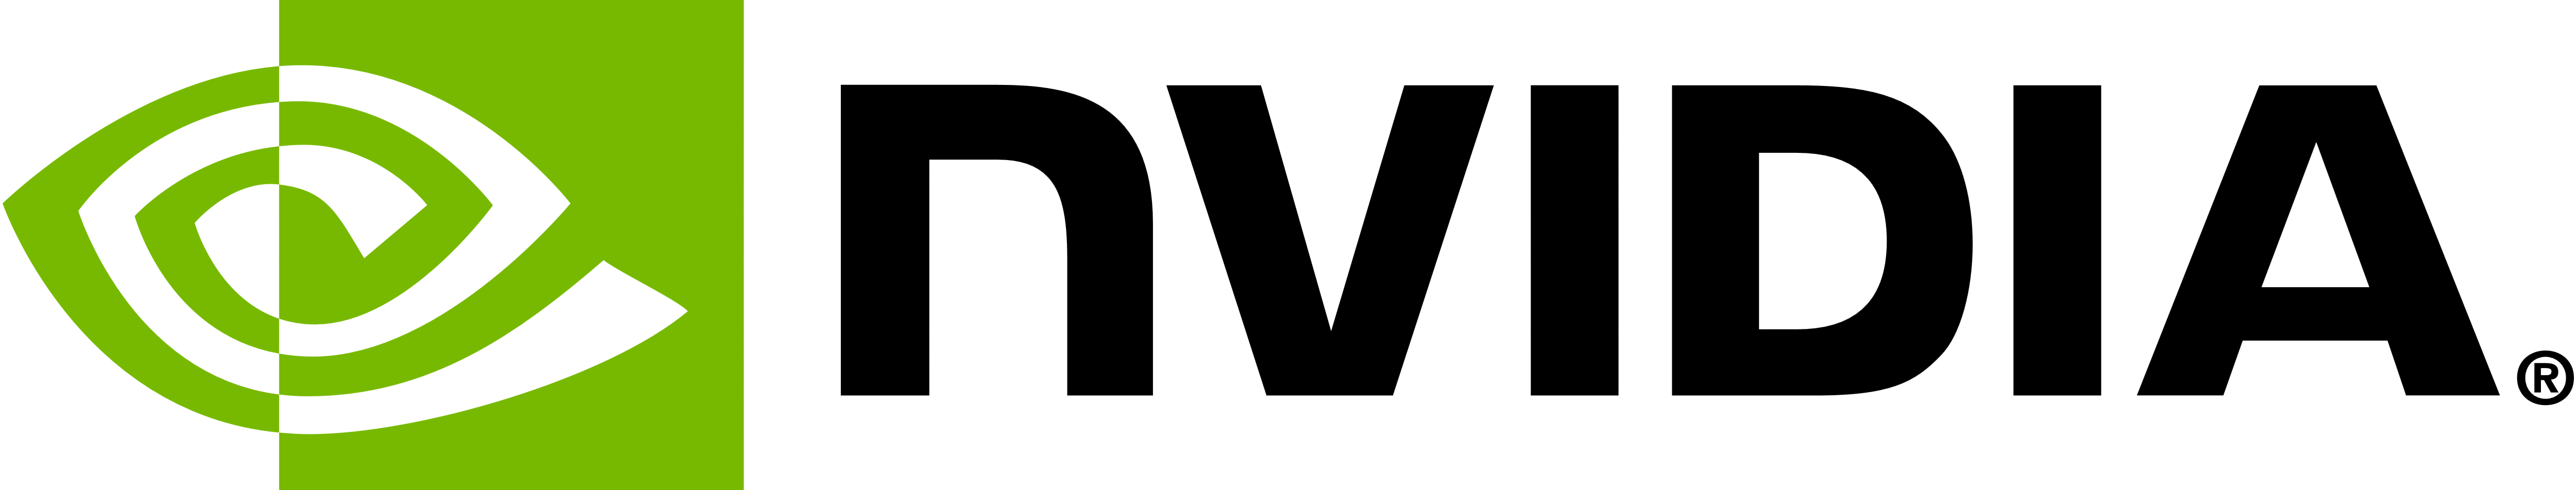 Logotipo da NVIDIA